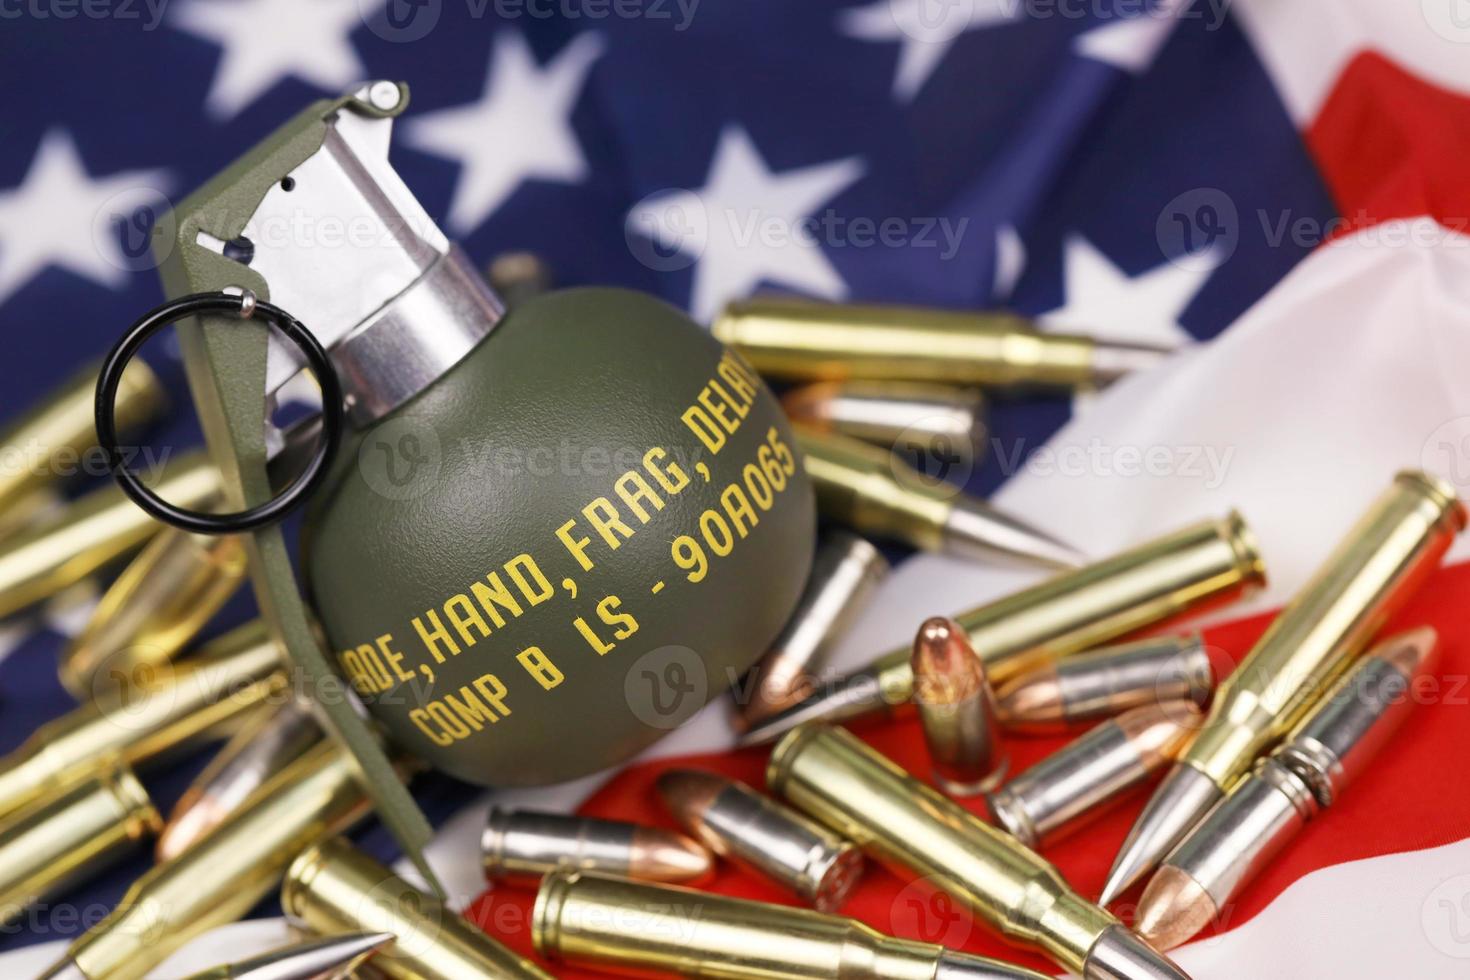 m67-Splittergranate und viele gelbe Kugeln und Patronen auf der Flagge der Vereinigten Staaten. konzept des waffenhandels auf usa-territorium oder spec ops foto